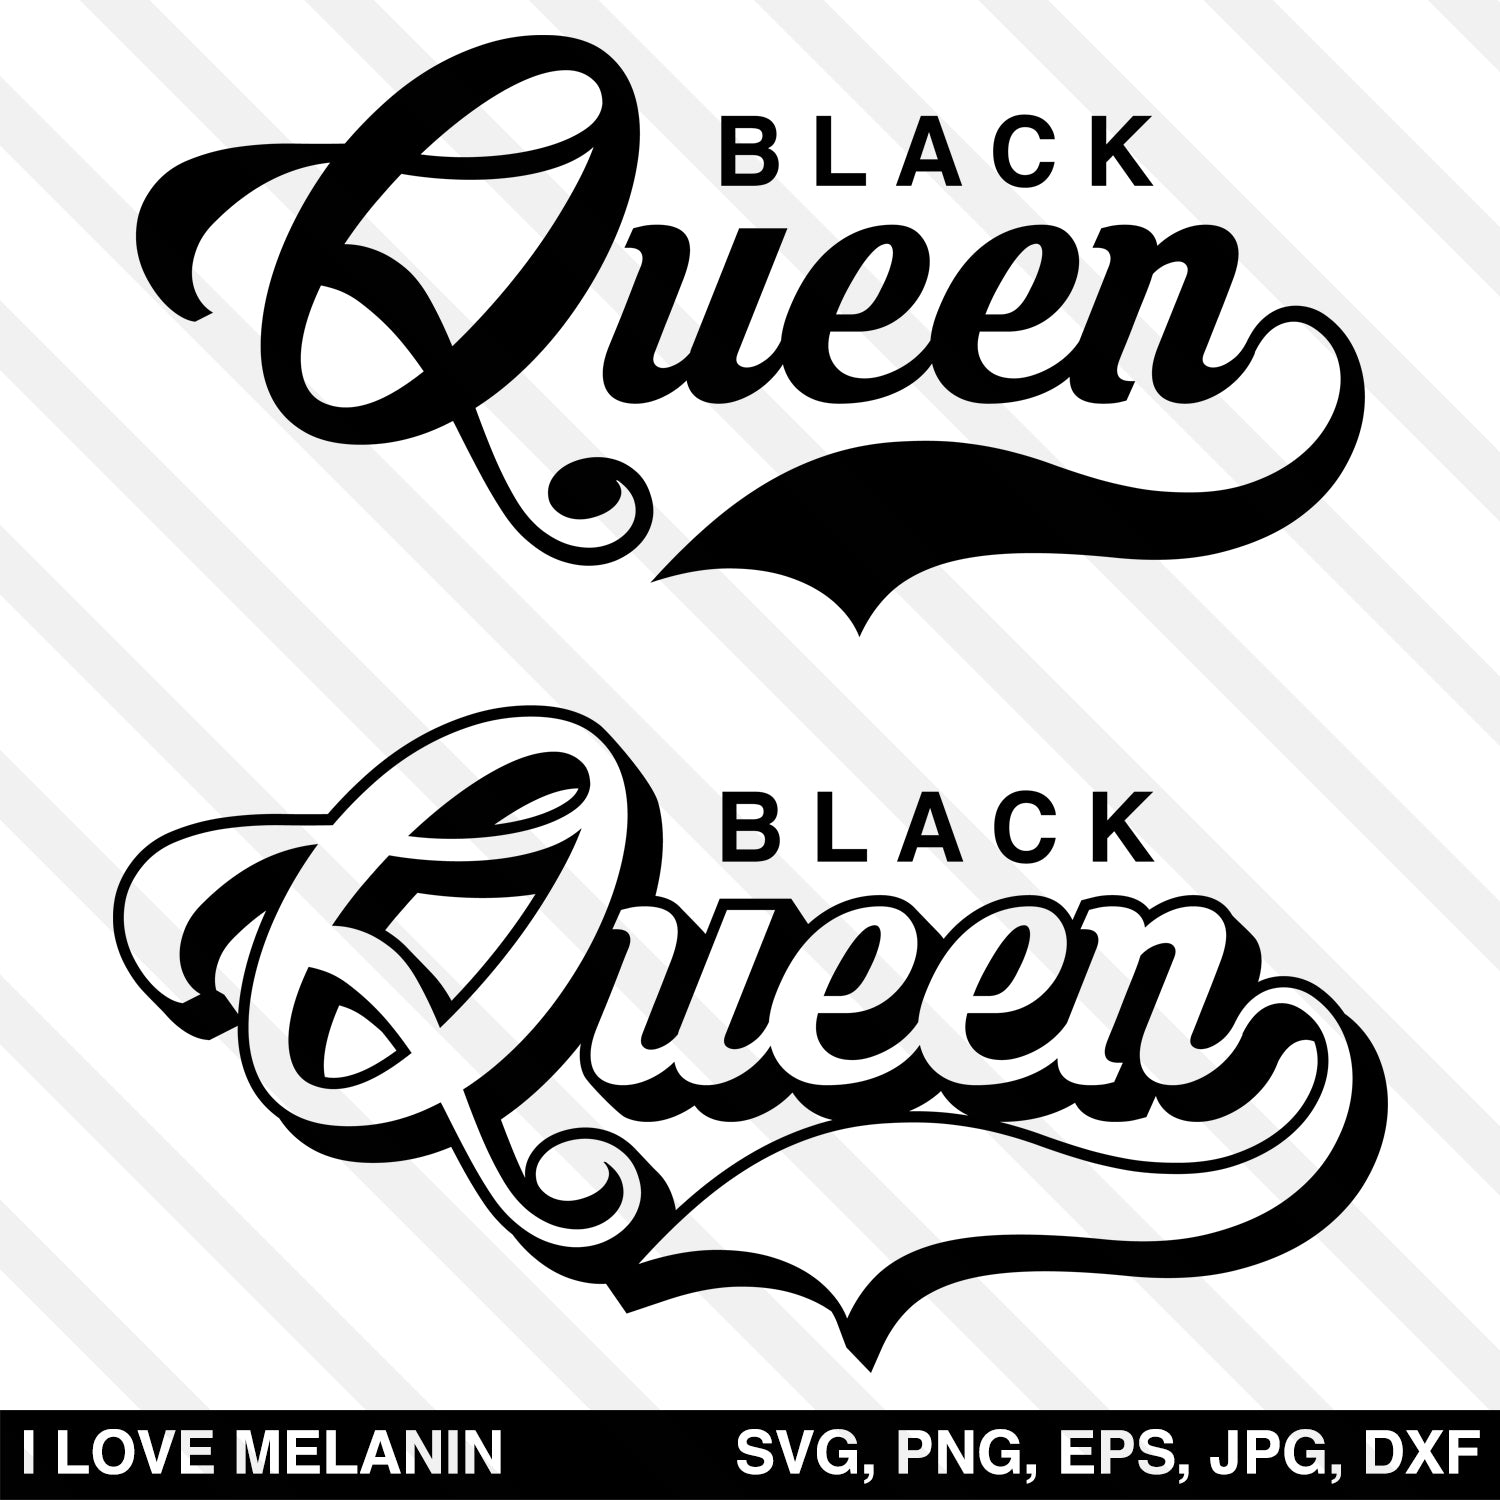 Black Queen Svg I Love Melanin